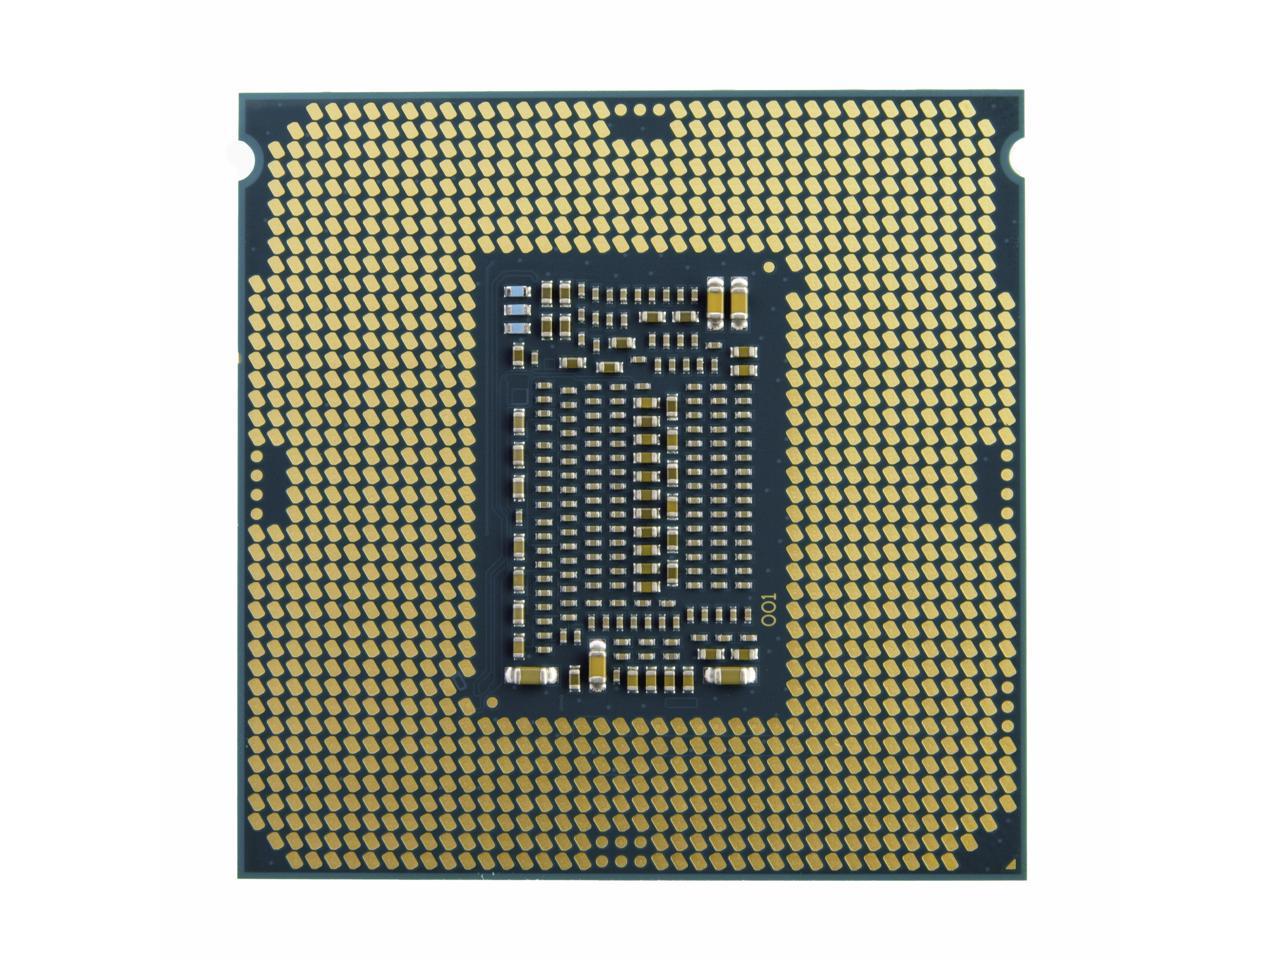 Процесор Intel Celeron DualCore G5905 - зображення 3